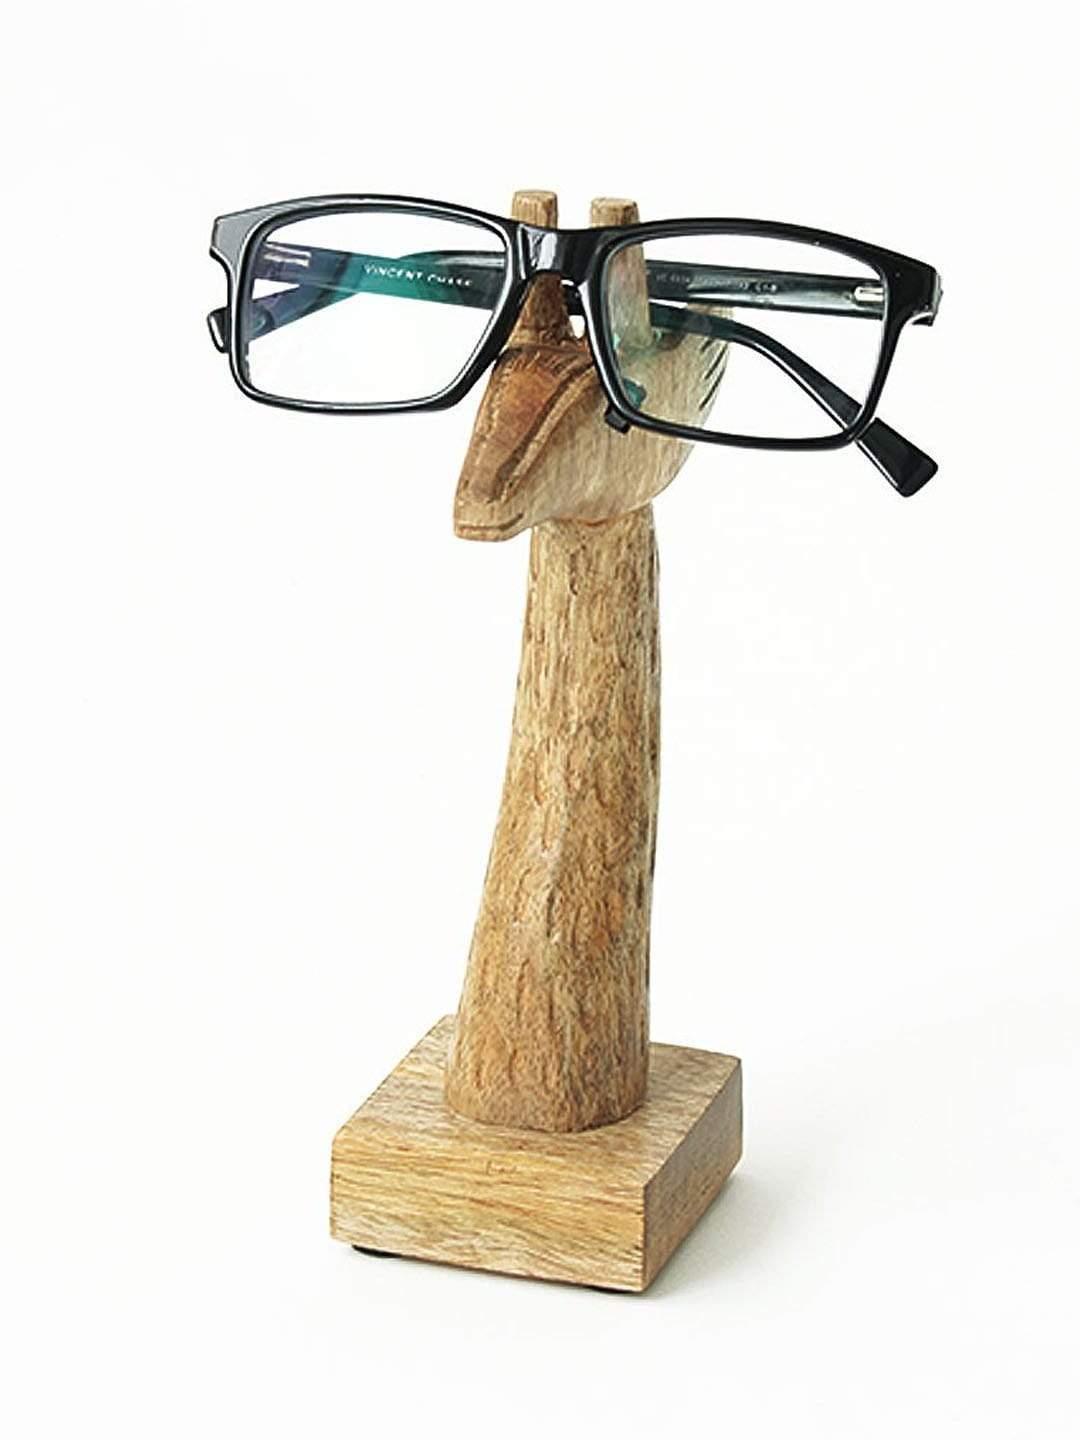 Mr. Giraffe Glasses Holder - The Wishing Chair